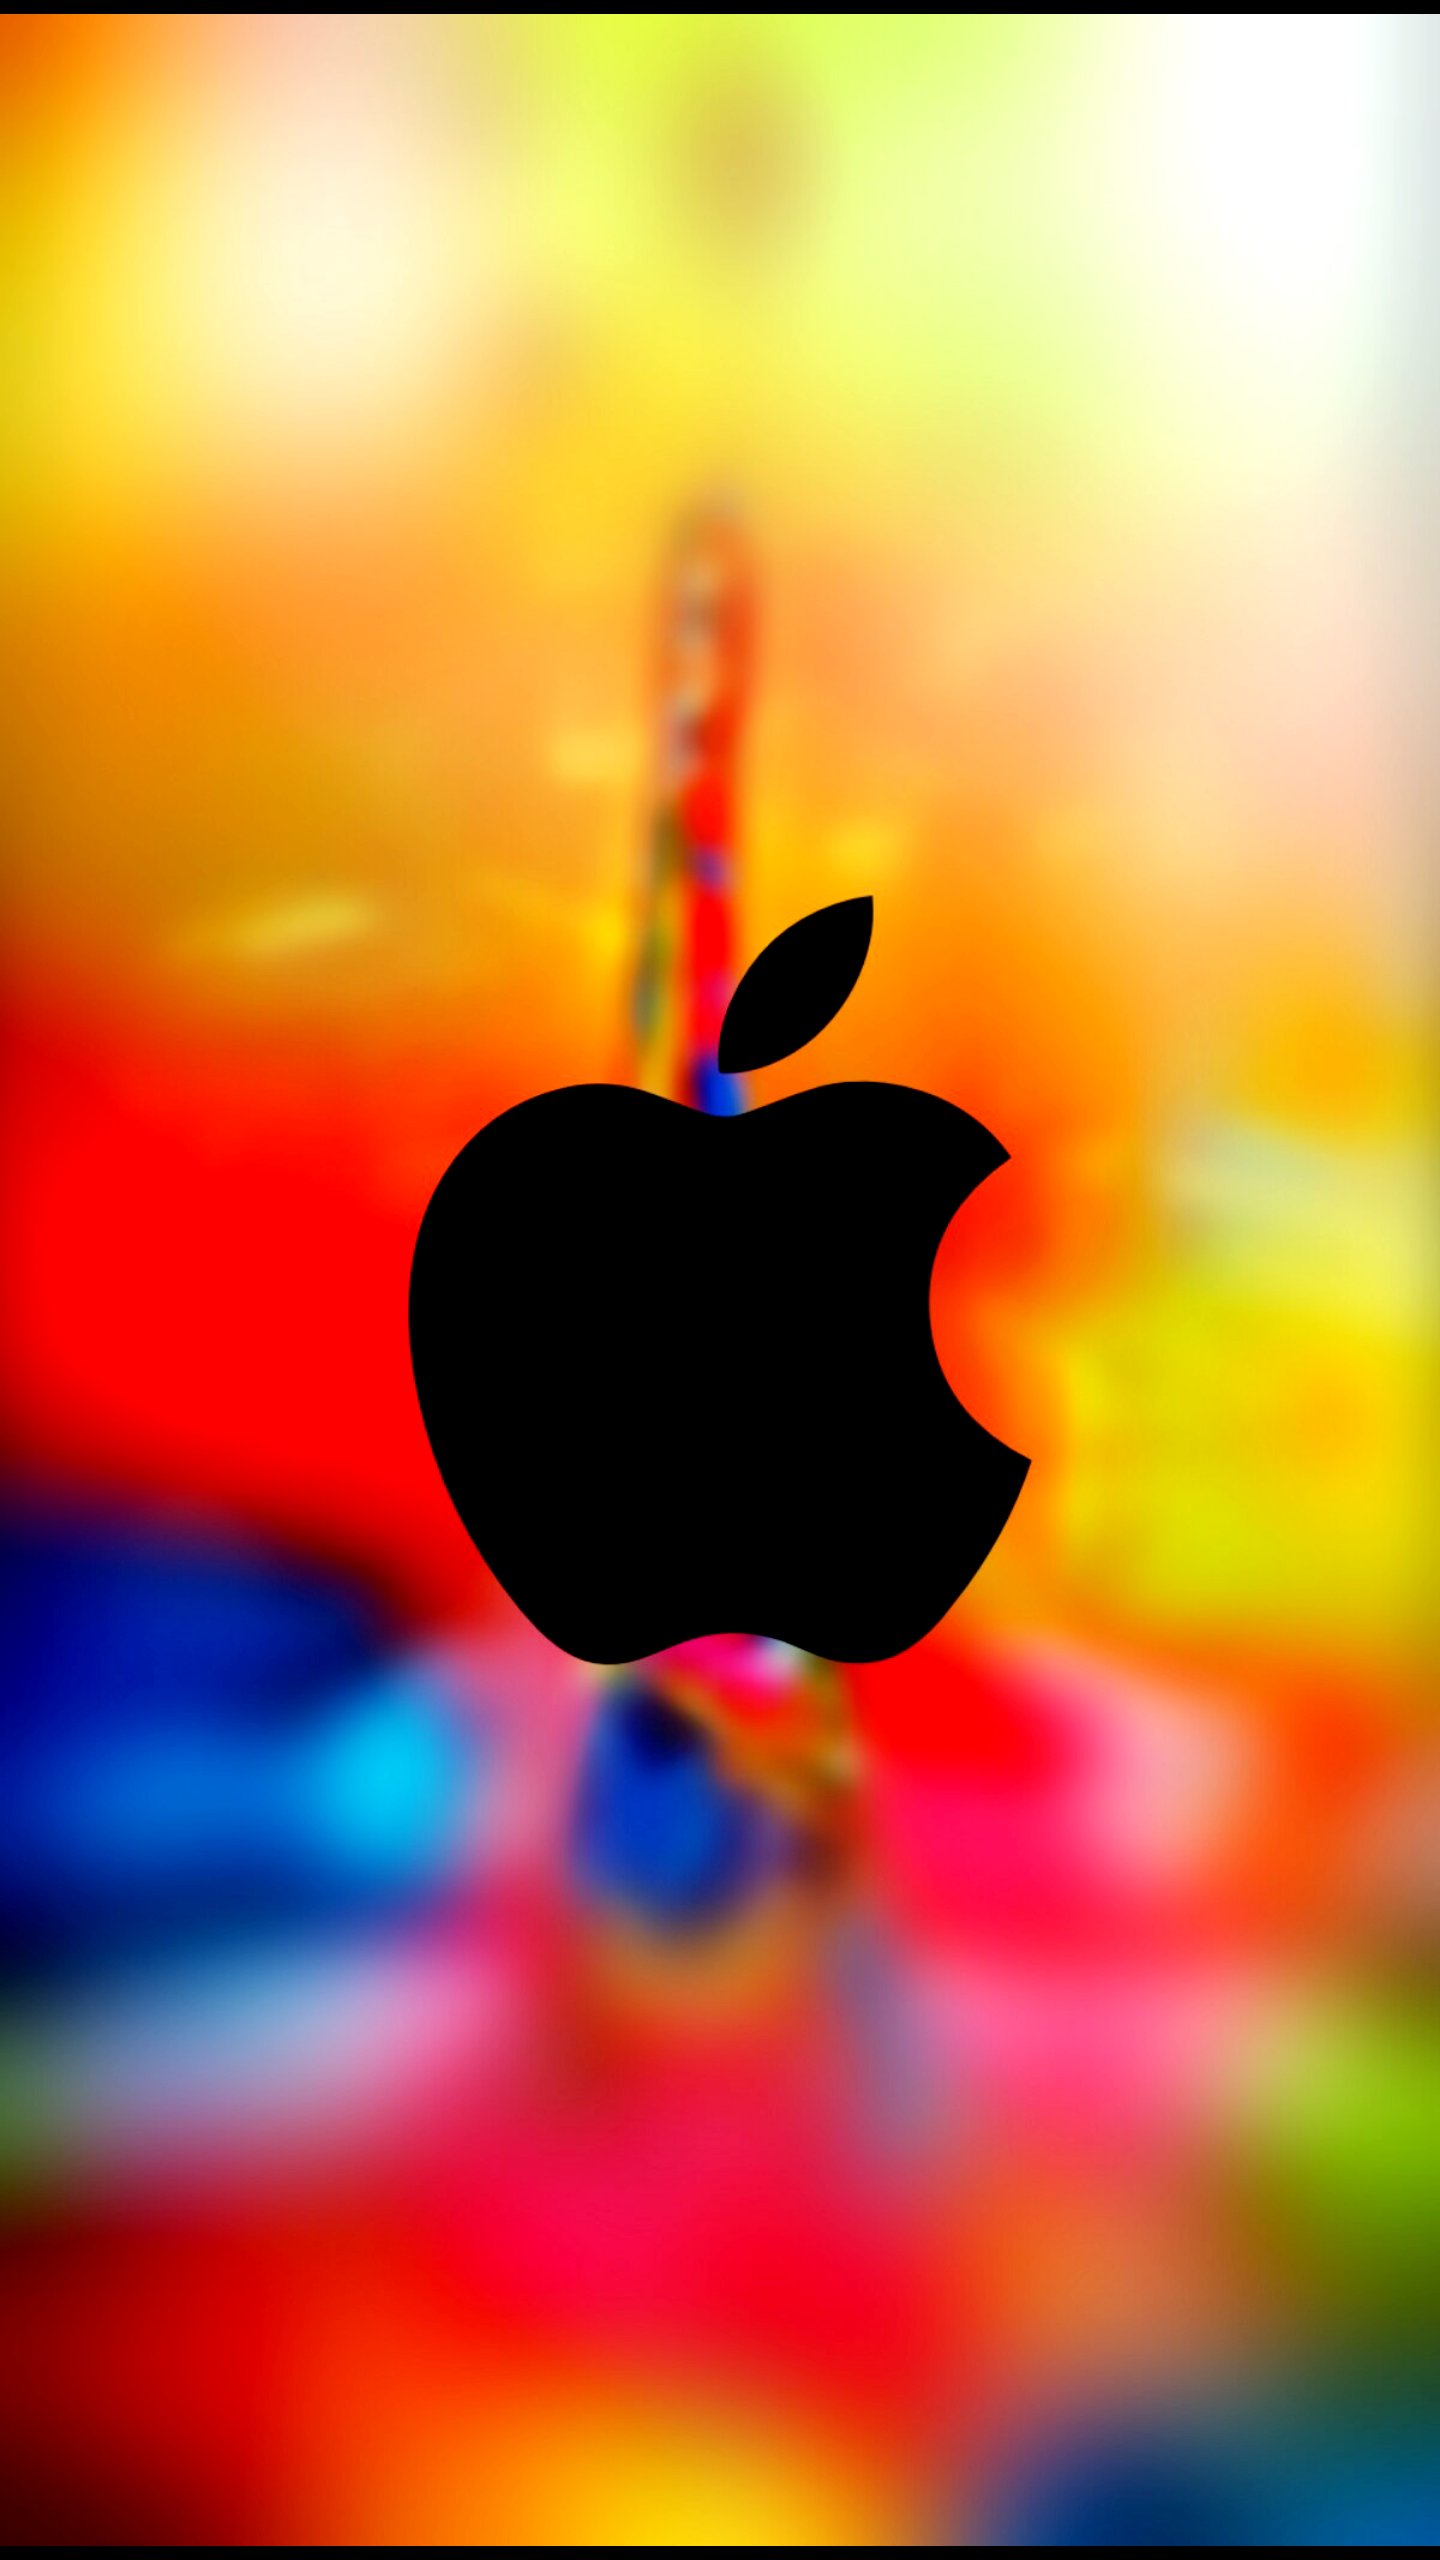 fond d'écran apple hd,rouge,ciel,orange,jaune,macro photographie